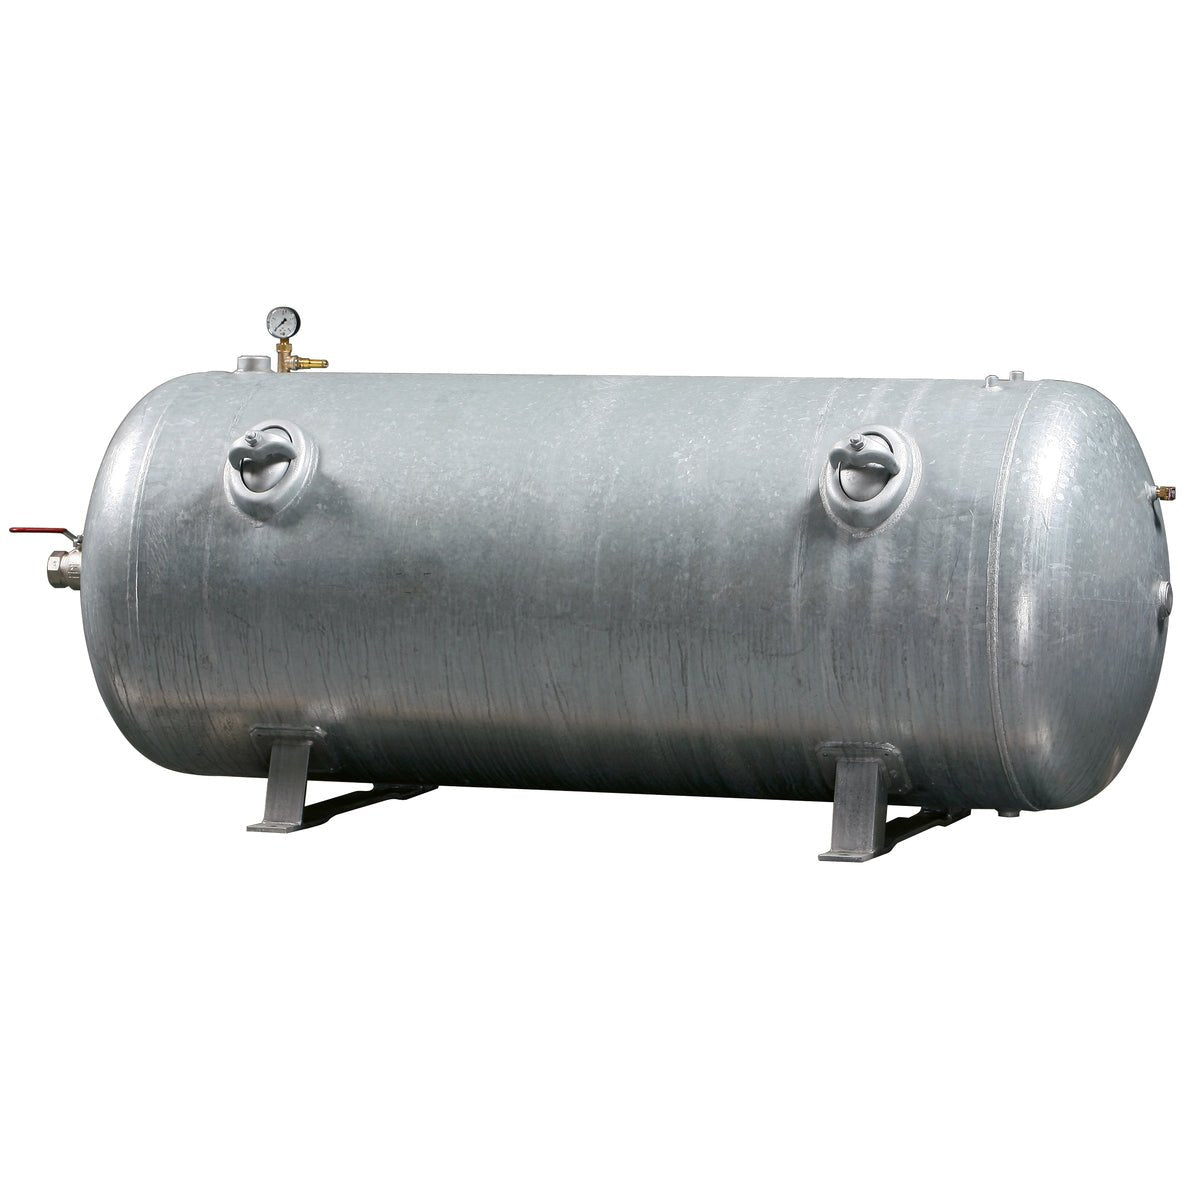 Kaeser Druckluftbehälter 500/11 lg. CE/SPV